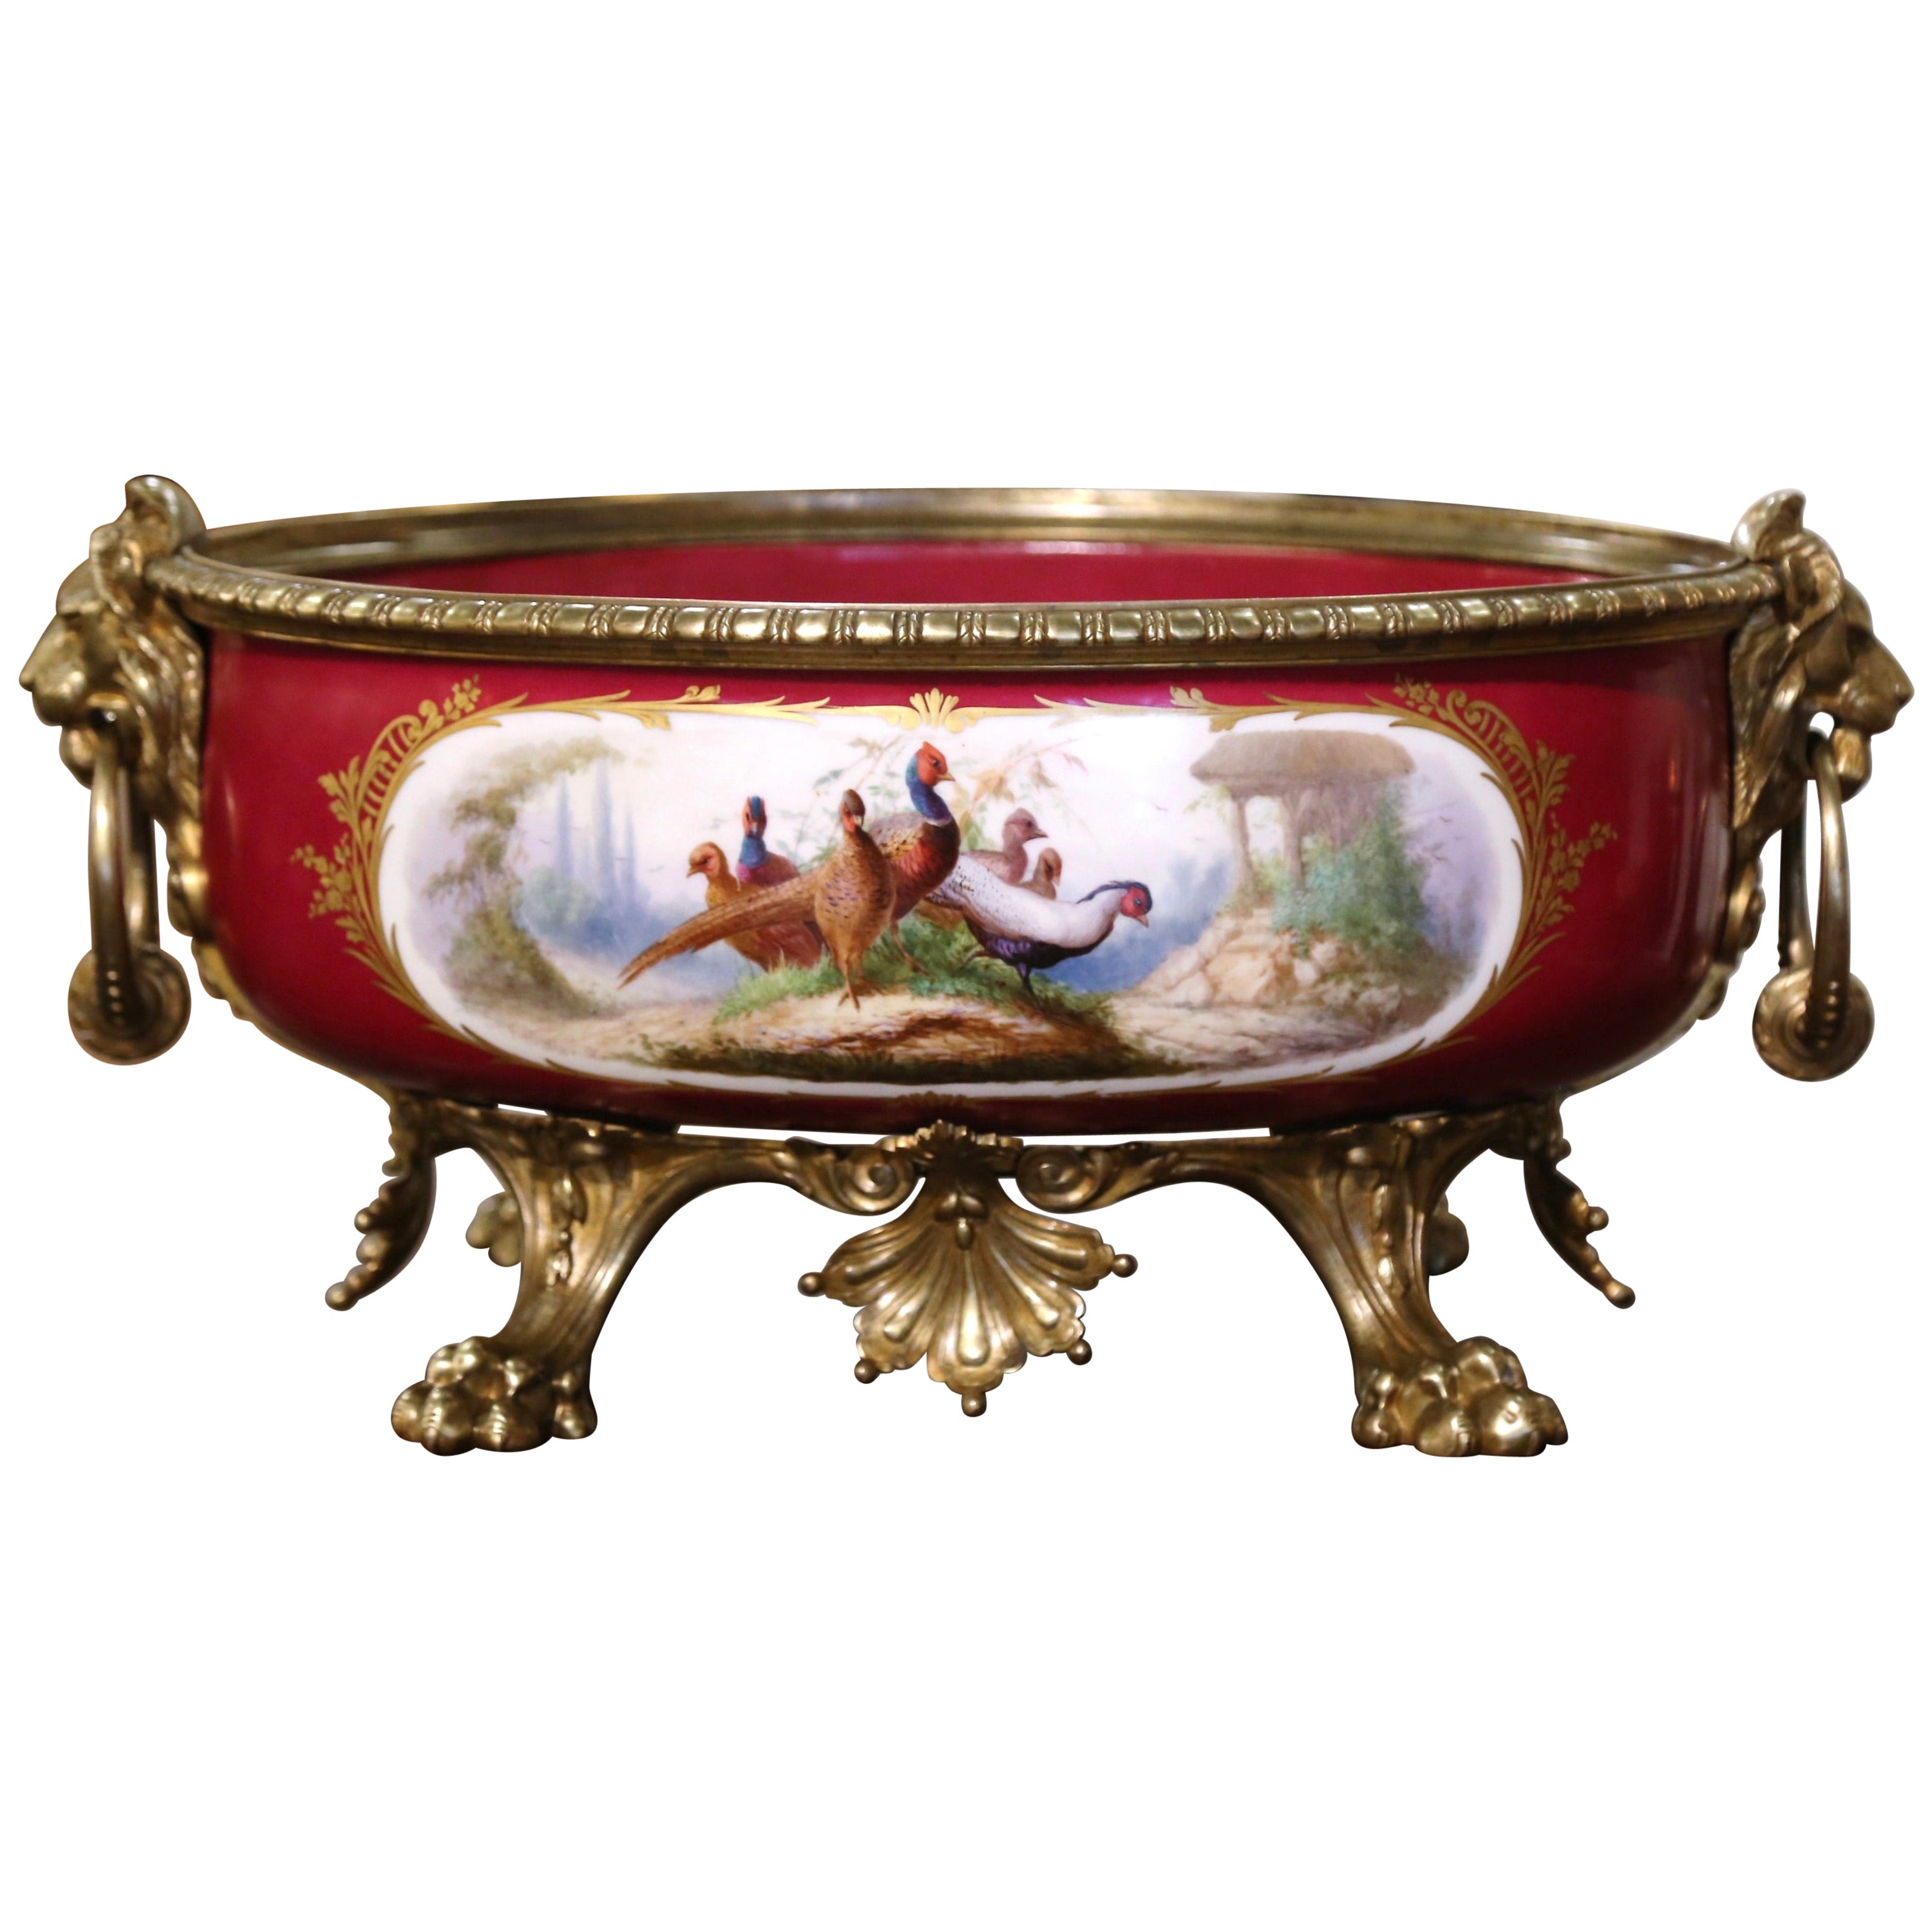 Jardinière ovale de style Empire français du 19ème siècle peinte à la main « Porcelaine de Paris » en vente